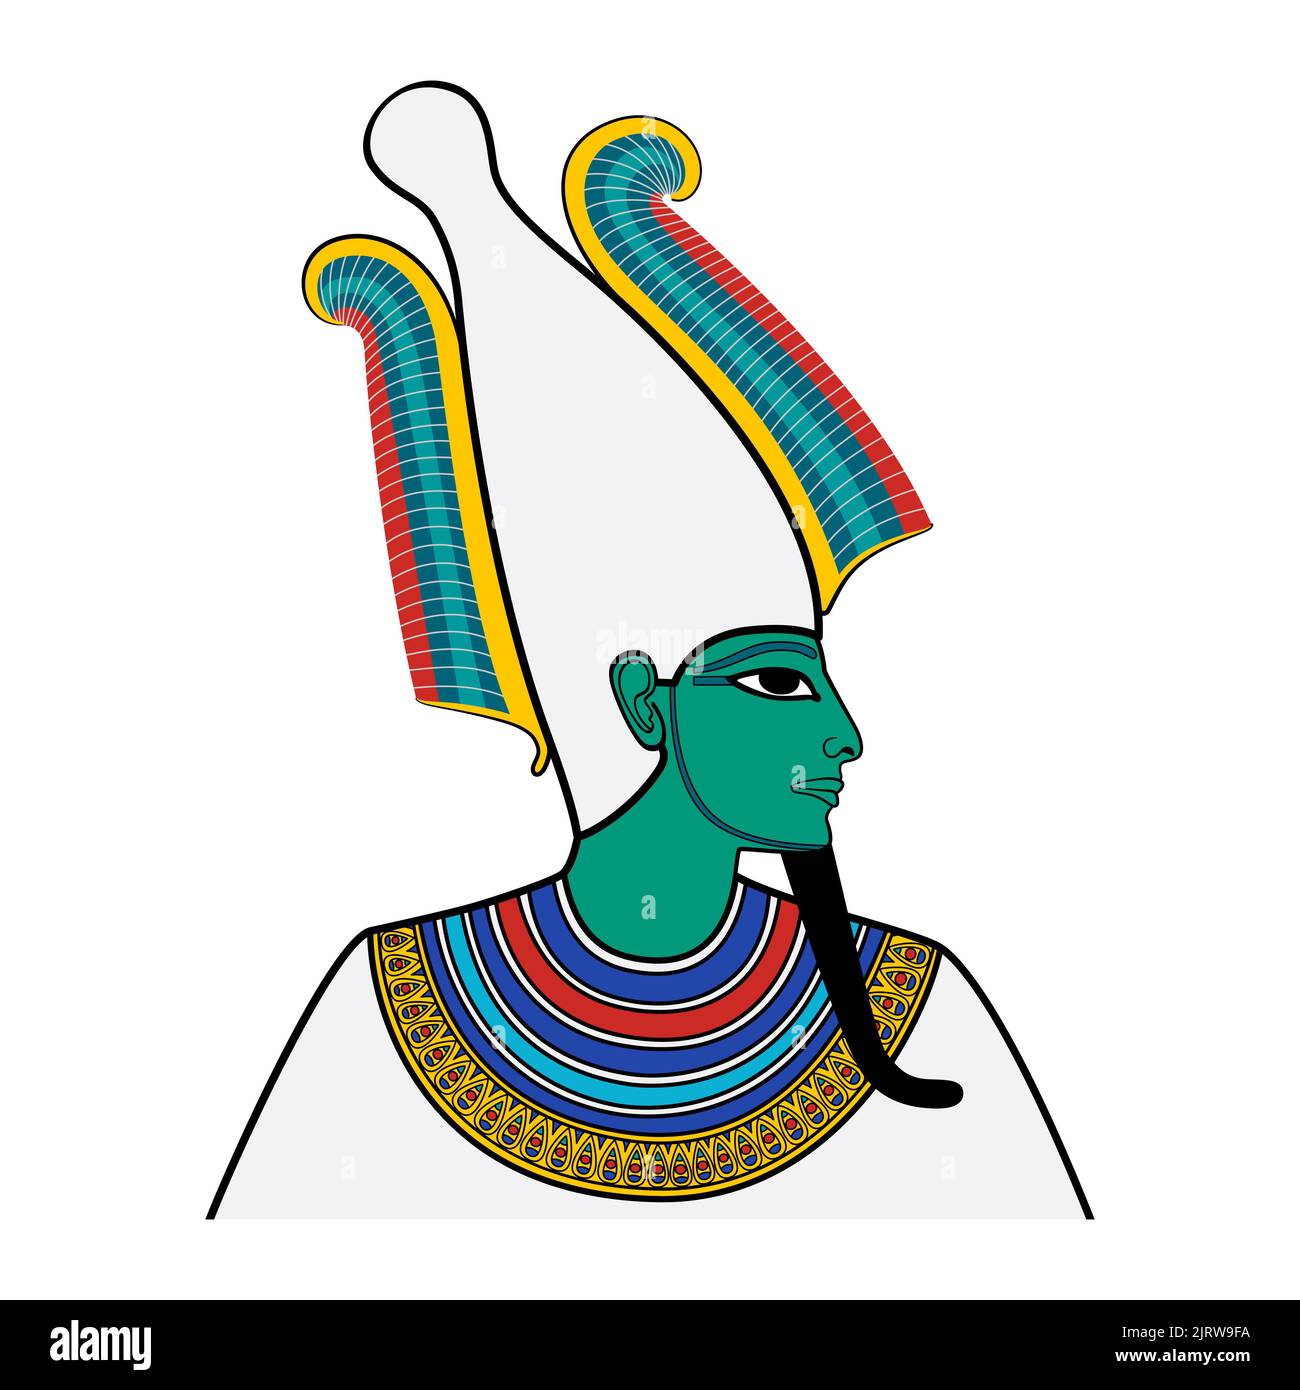 Osiris, retrato del dios del más allá, muerto y resurrección en el antiguo Egipto. Representado con piel turquesa verdosa, barba faraón y corona atef. Foto de stock